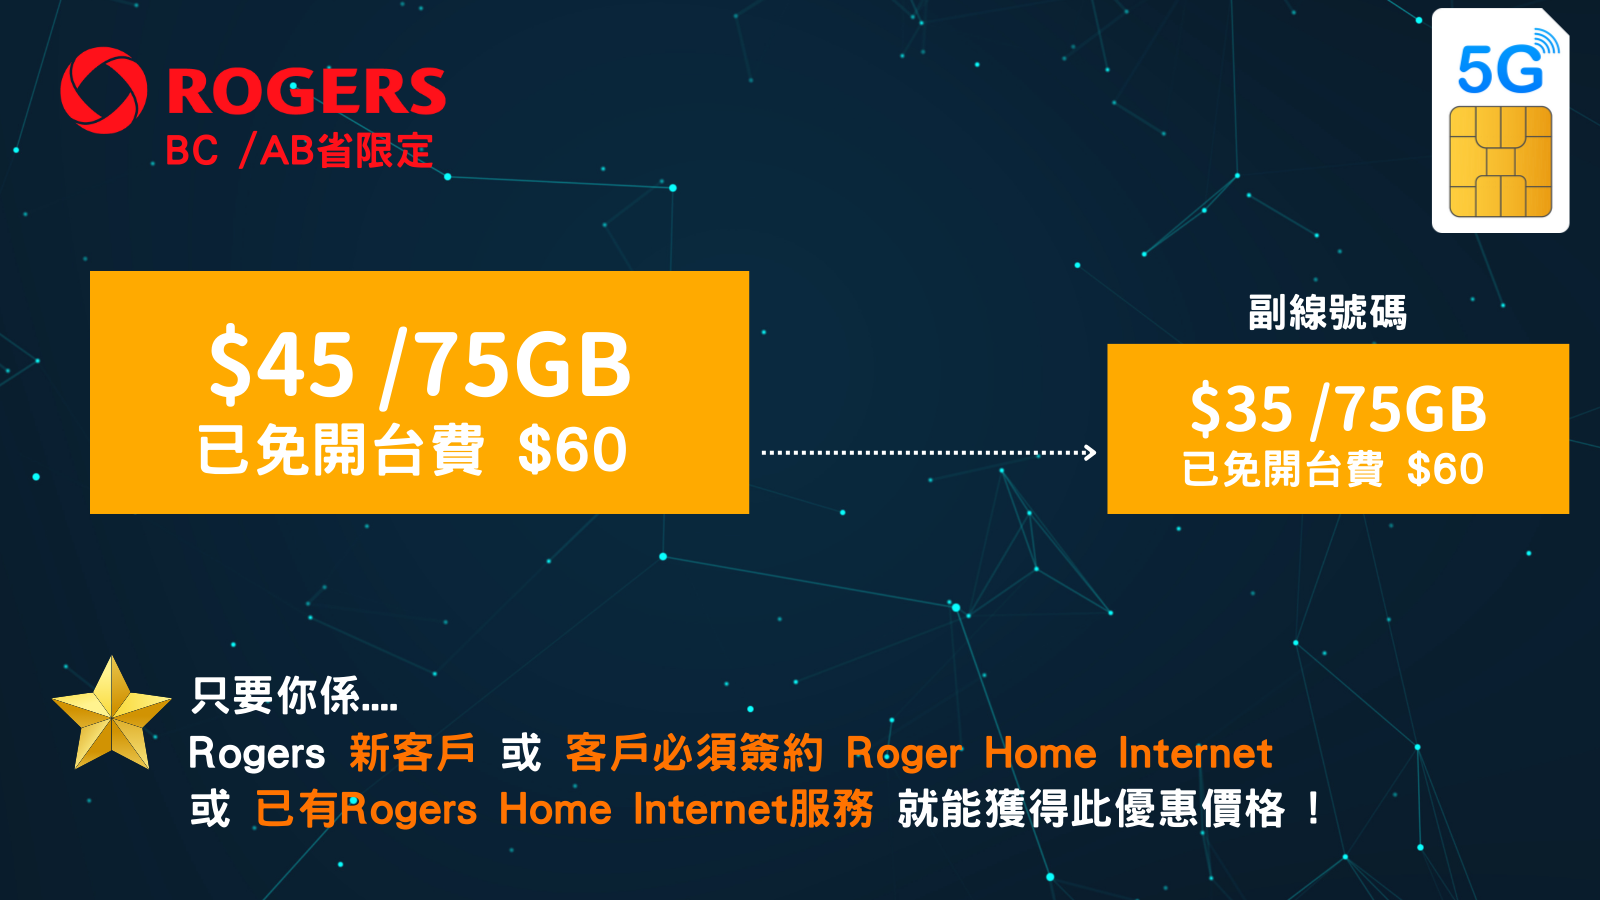 5G Roger 網絡